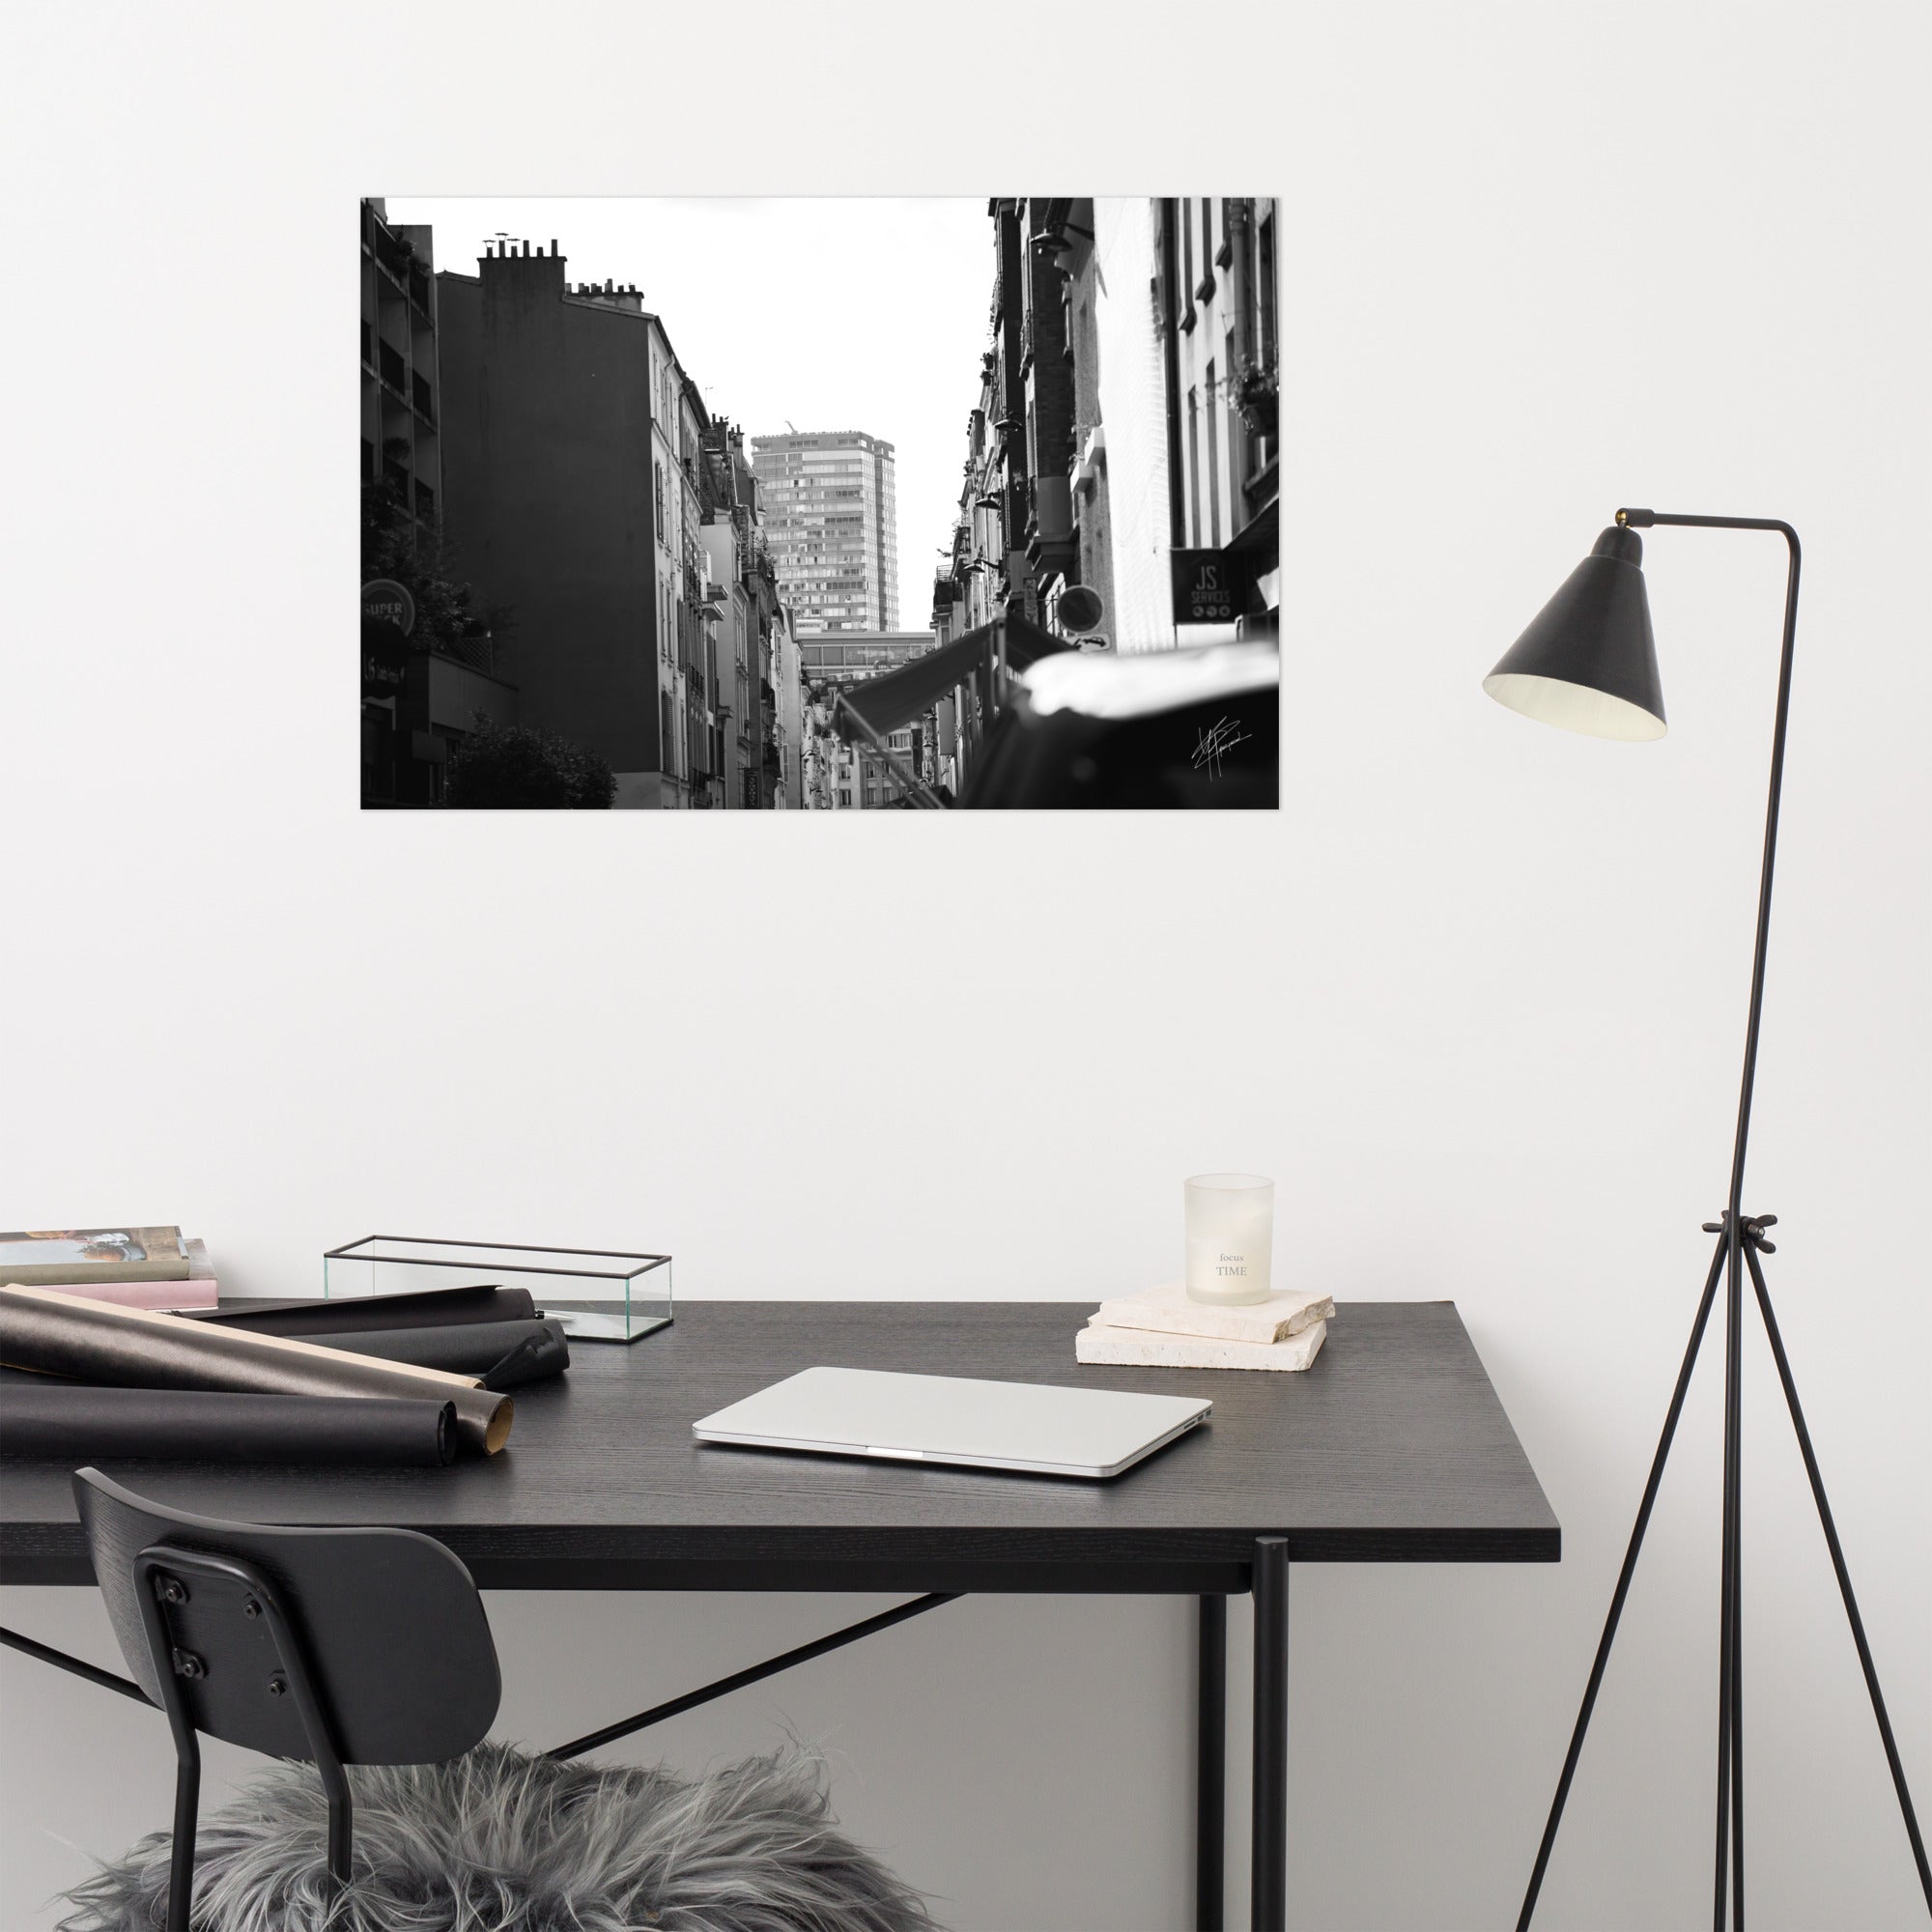 Photographie en noir et blanc de la 'Rue Tiphaine', capture authentique de la vie quotidienne du vieux Paris.